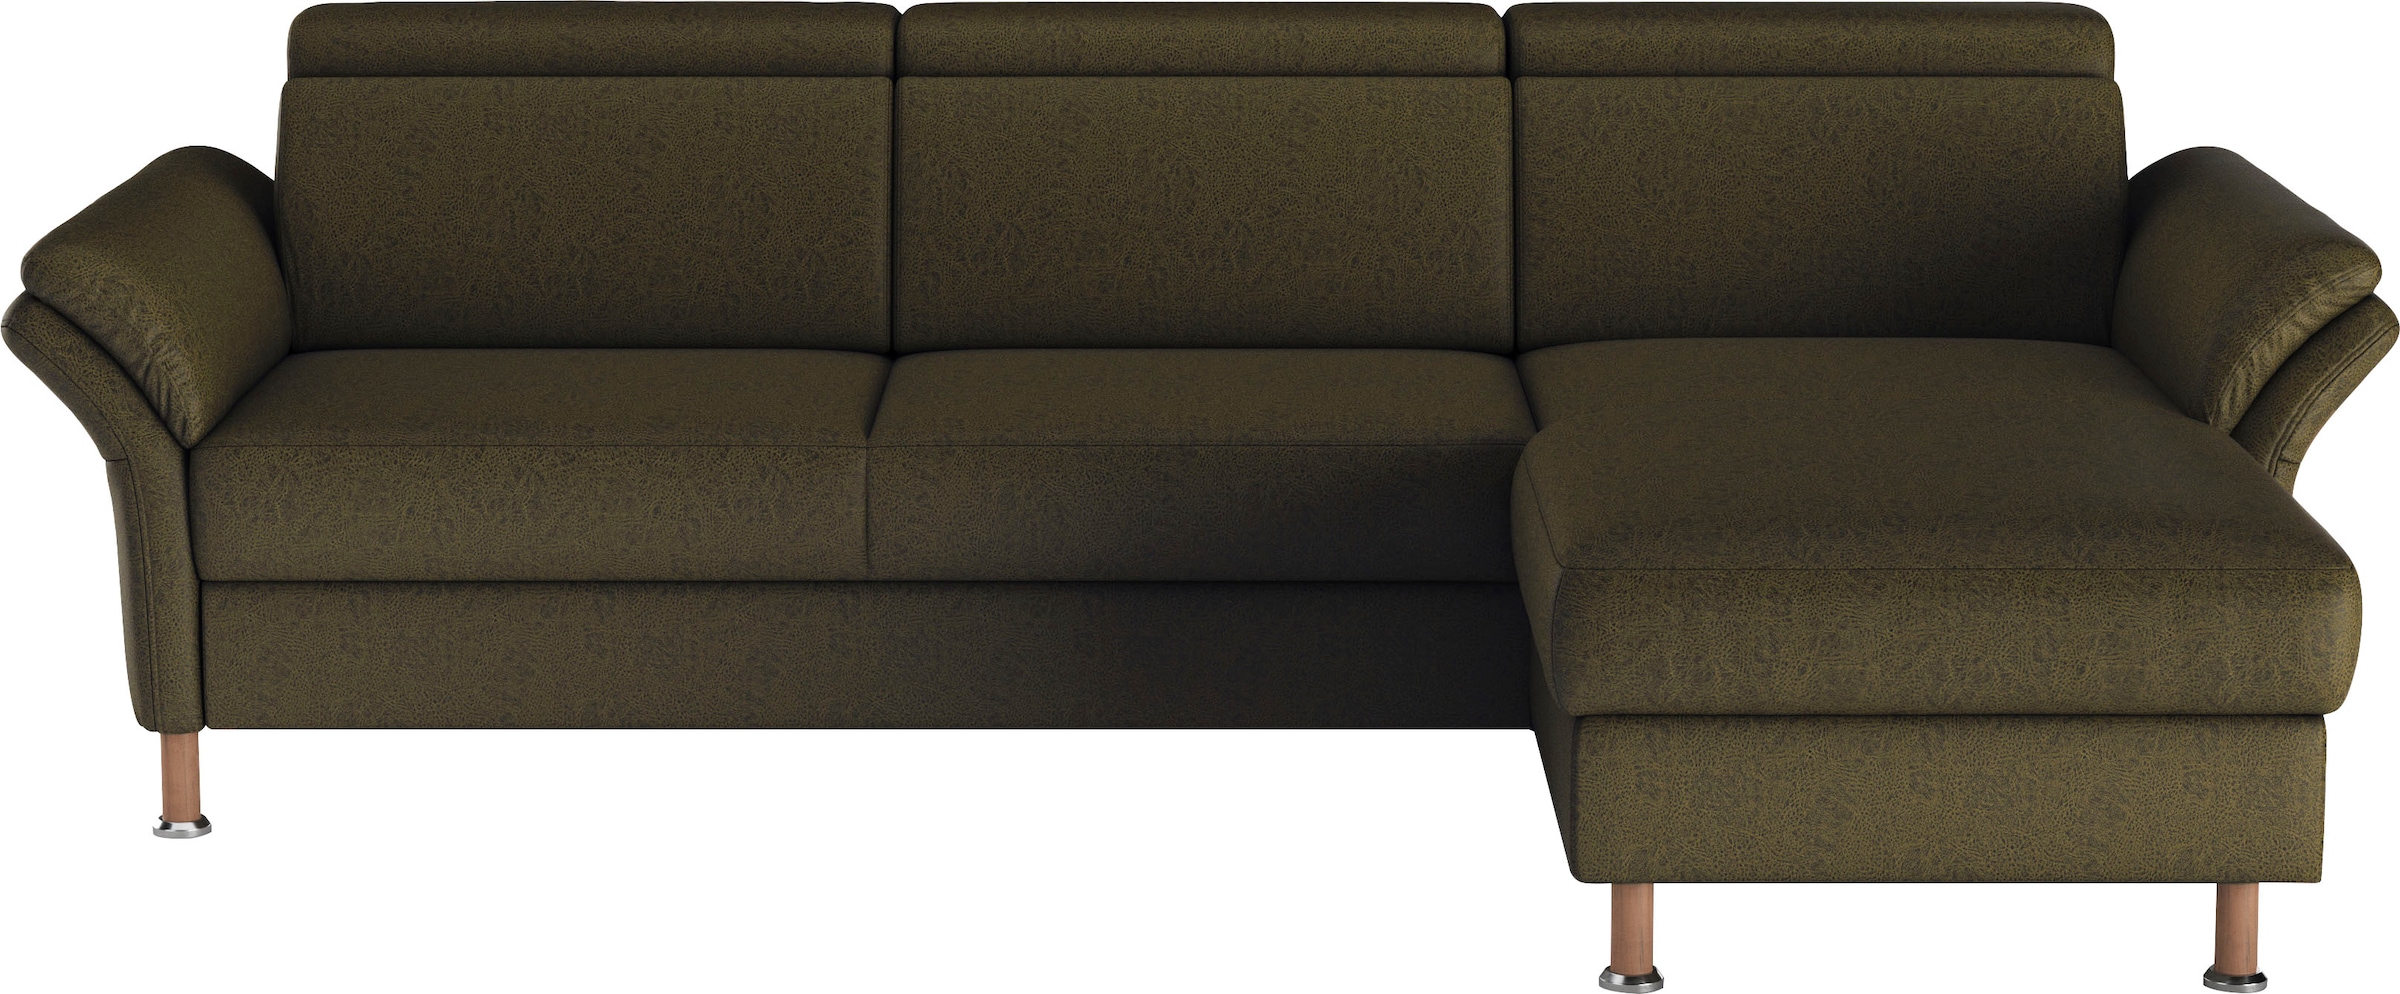 Ecksofa »Calypso L-Form«, mit motorischen Funktionen im Sofa und Recamiere